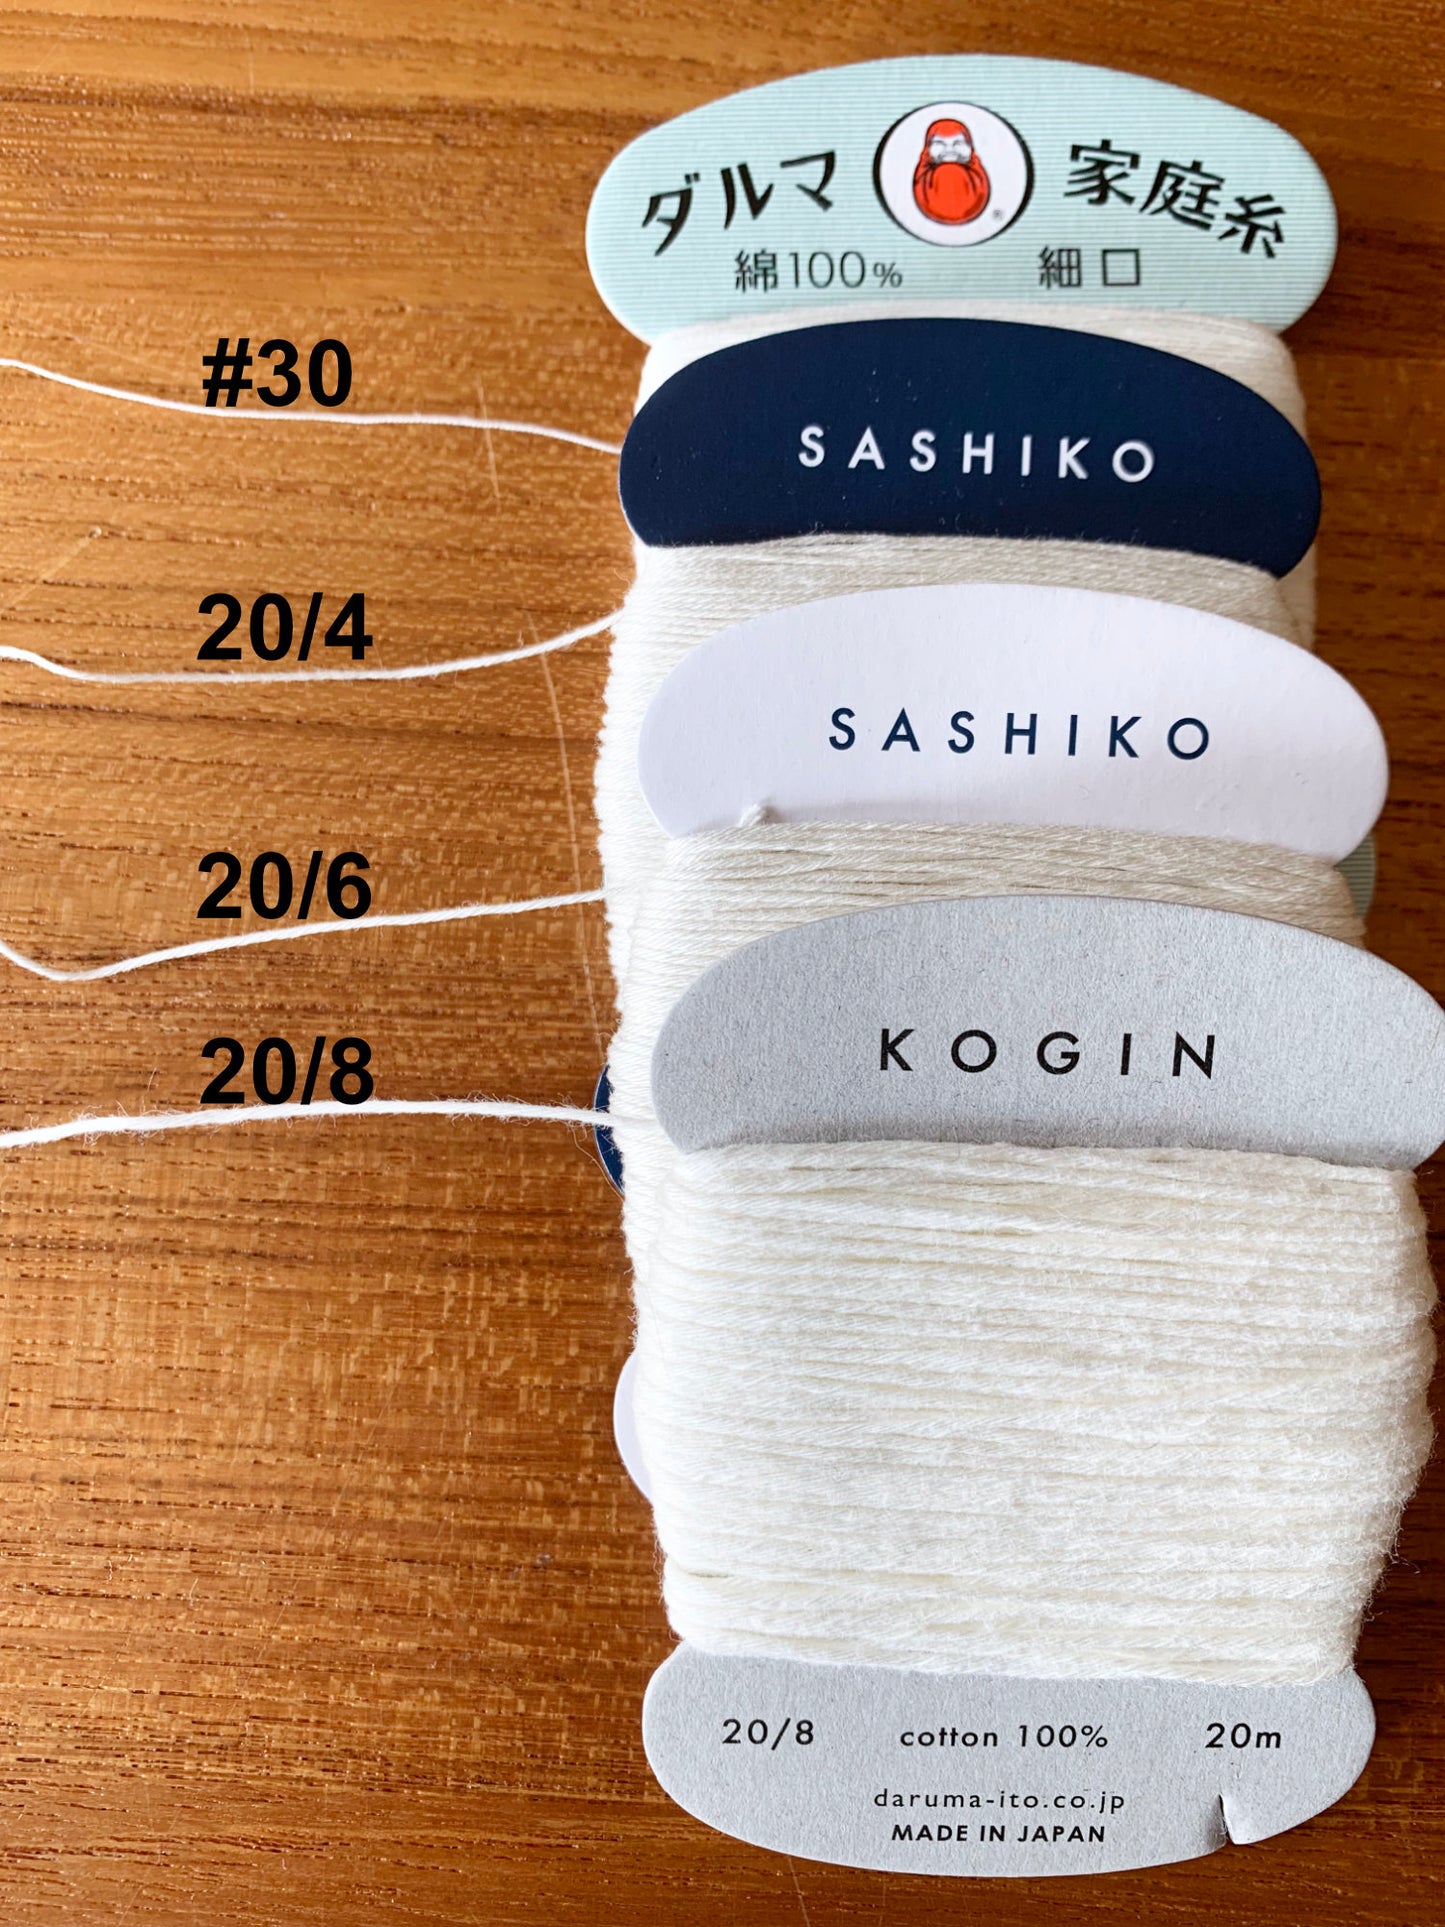 Daruma Hand Sewing Thread SHIRO Japanese Cotton 100 meter skein size #30 白 white